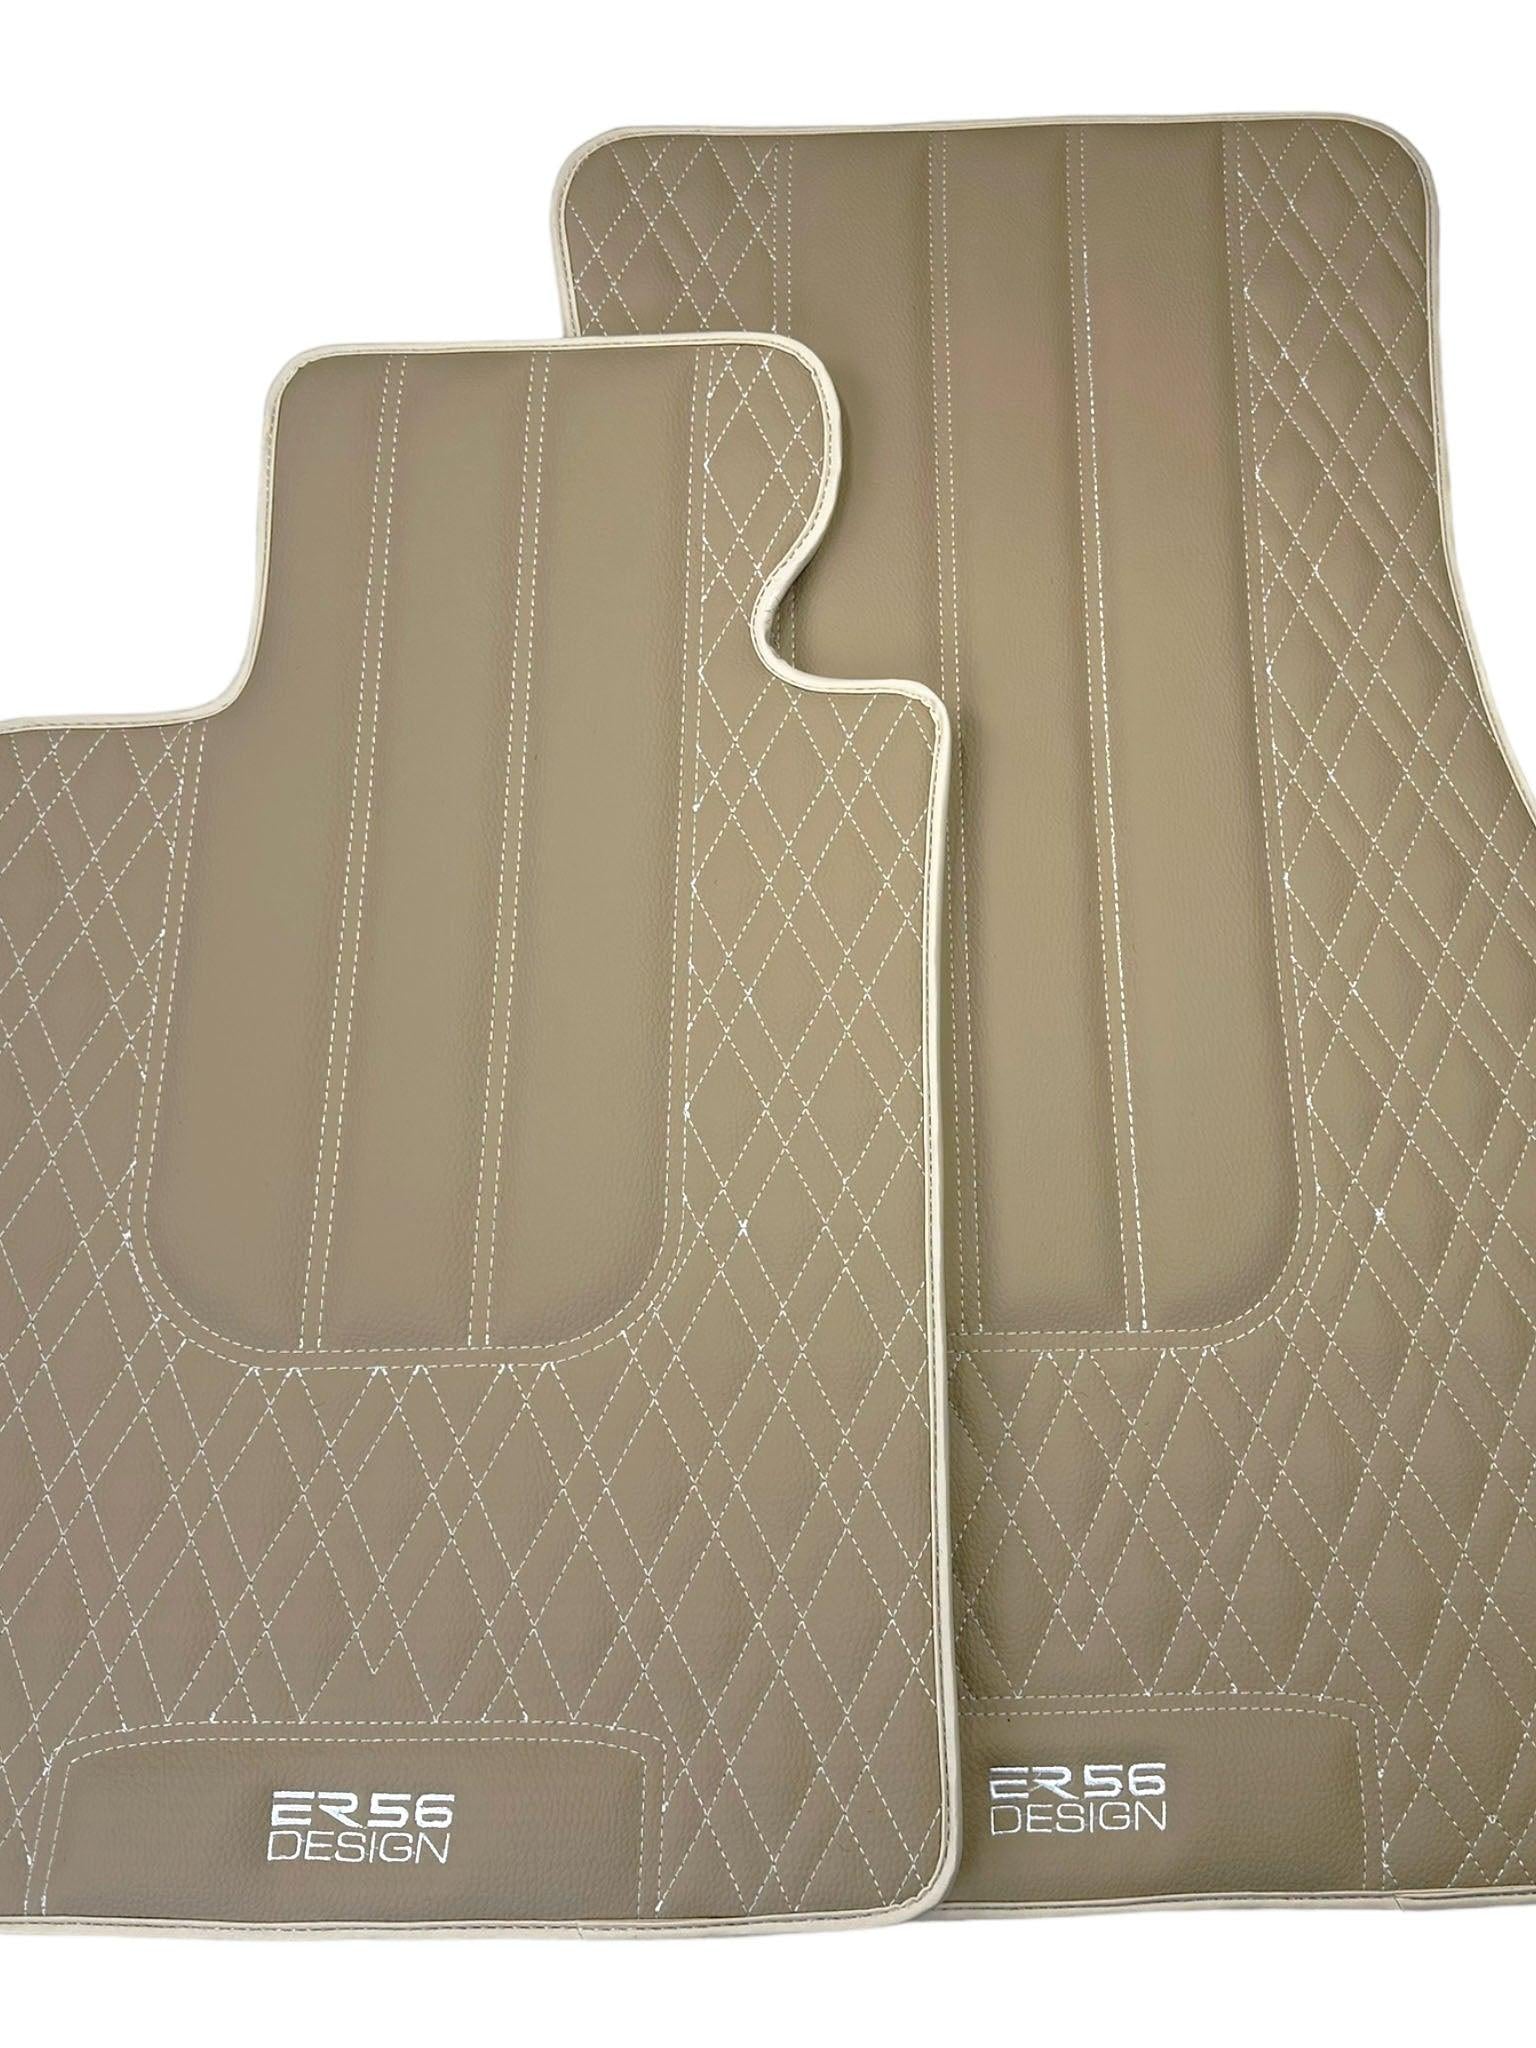 Beige Leather Floor Floor Mats For BMW X5 Series F15